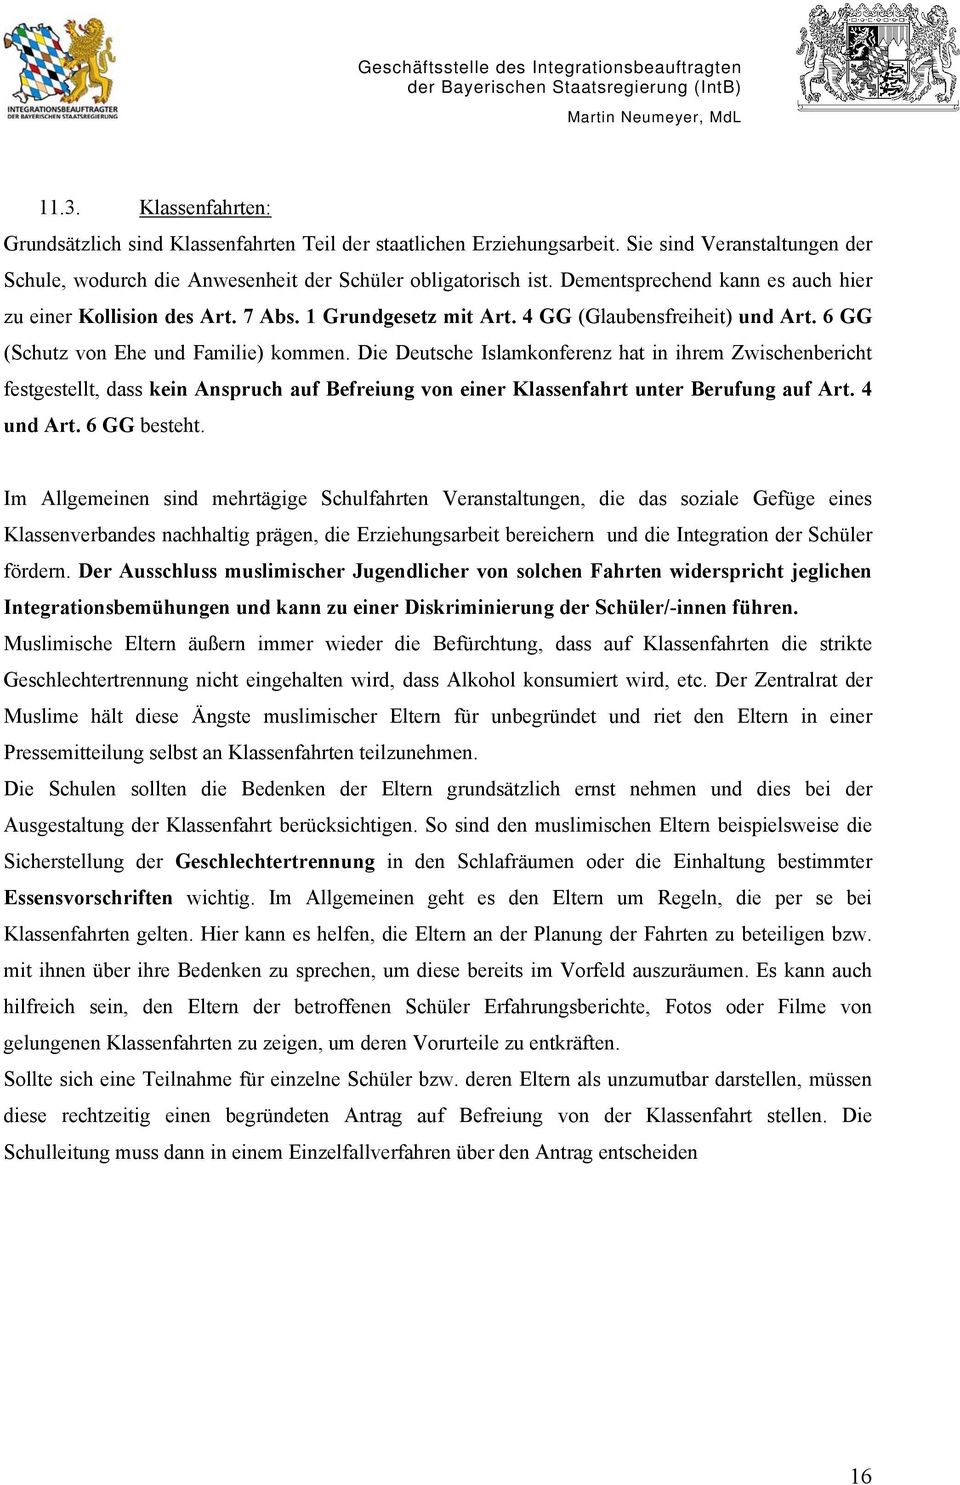 Die Deutsche Islamkonferenz hat in ihrem Zwischenbericht festgestellt, dass kein Anspruch auf Befreiung von einer Klassenfahrt unter Berufung auf Art. 4 und Art. 6 GG besteht.